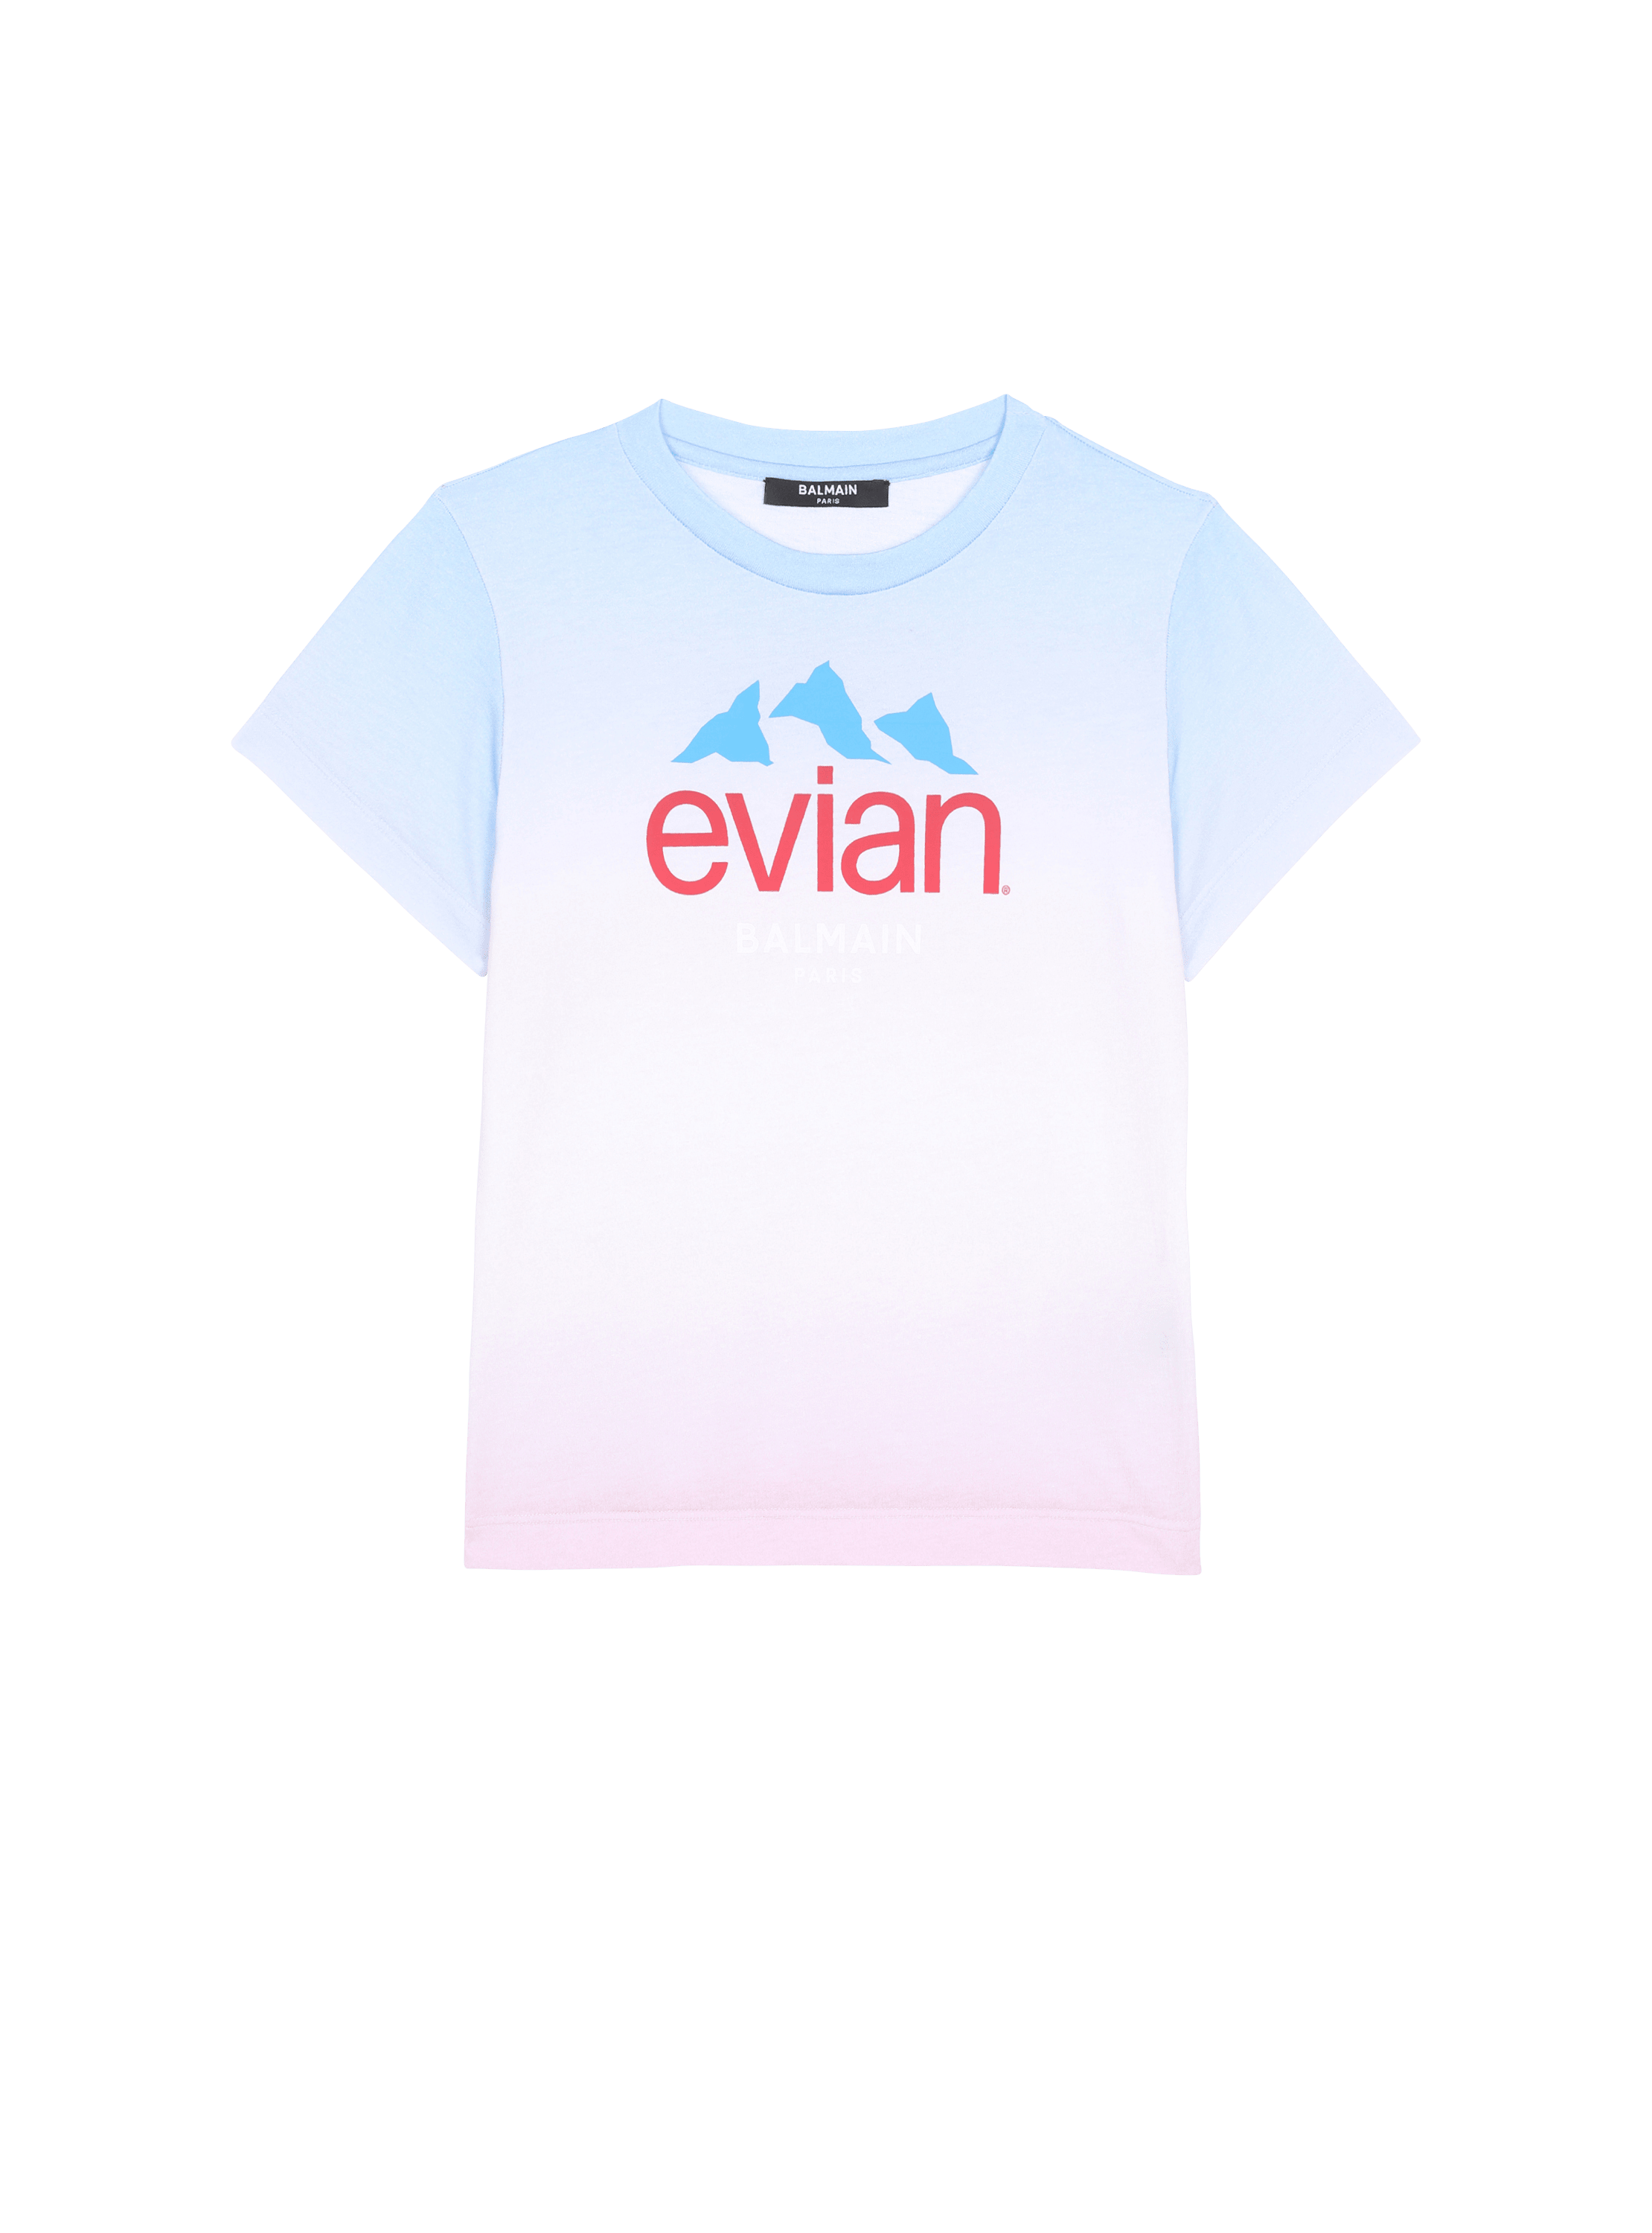 Balmain x Evian - T-shirt dégradé